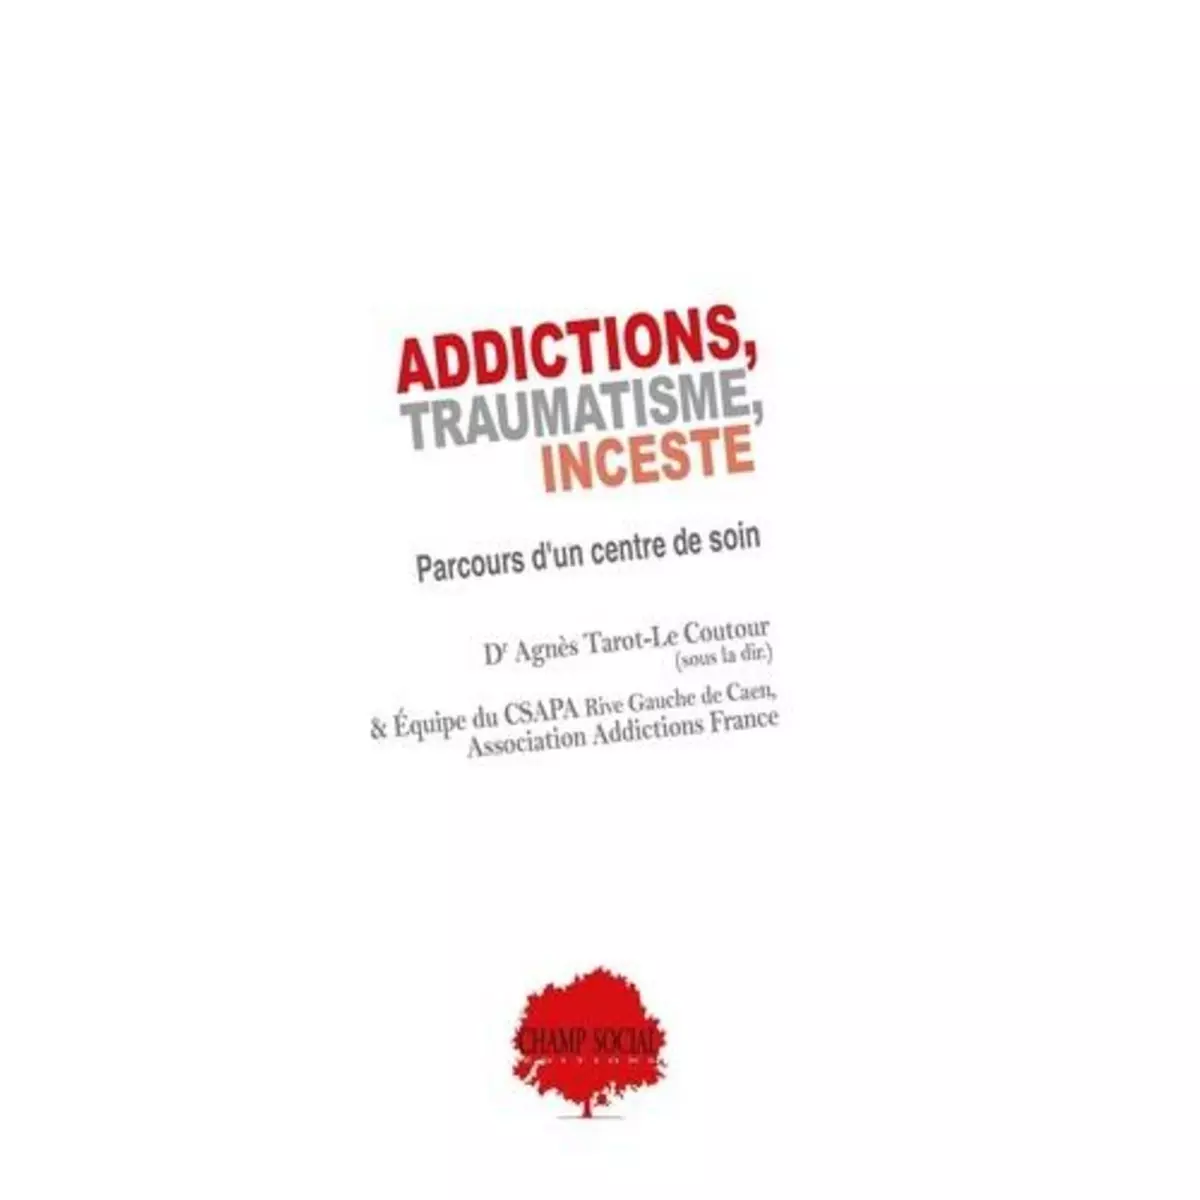  ADDICTIONS, TRAUMATISME, INCESTE. PARCOURS D'UN CENTRE DE SOIN, Tarot-Le Coutour Agnès